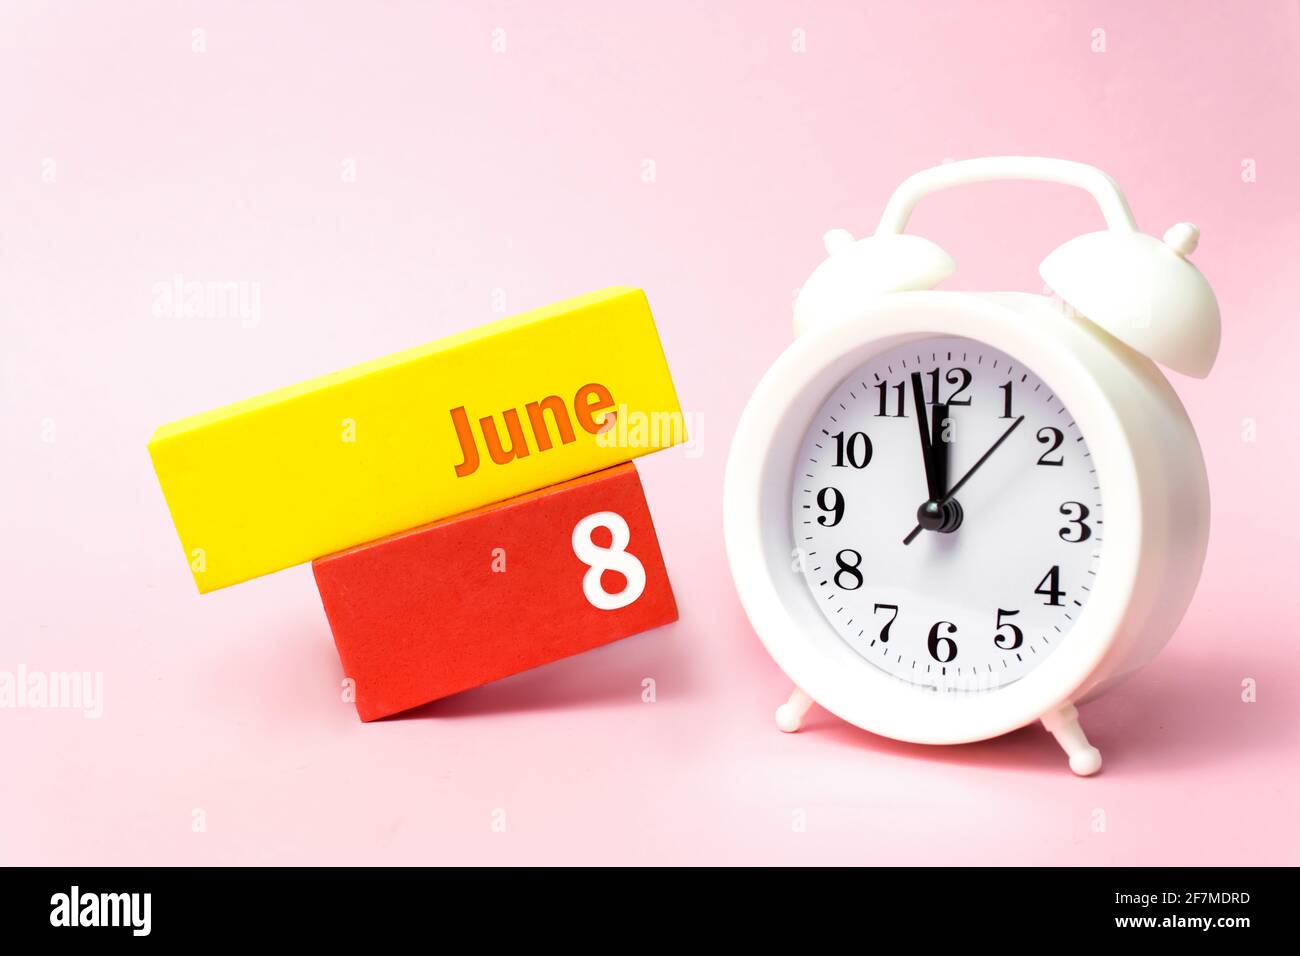 Juni. Tag 8 des Monats, Kalenderdatum. Weißer Wecker auf pastellrosa Hintergrund. Sommermonat, Tag des Jahres Konzept Stockfoto